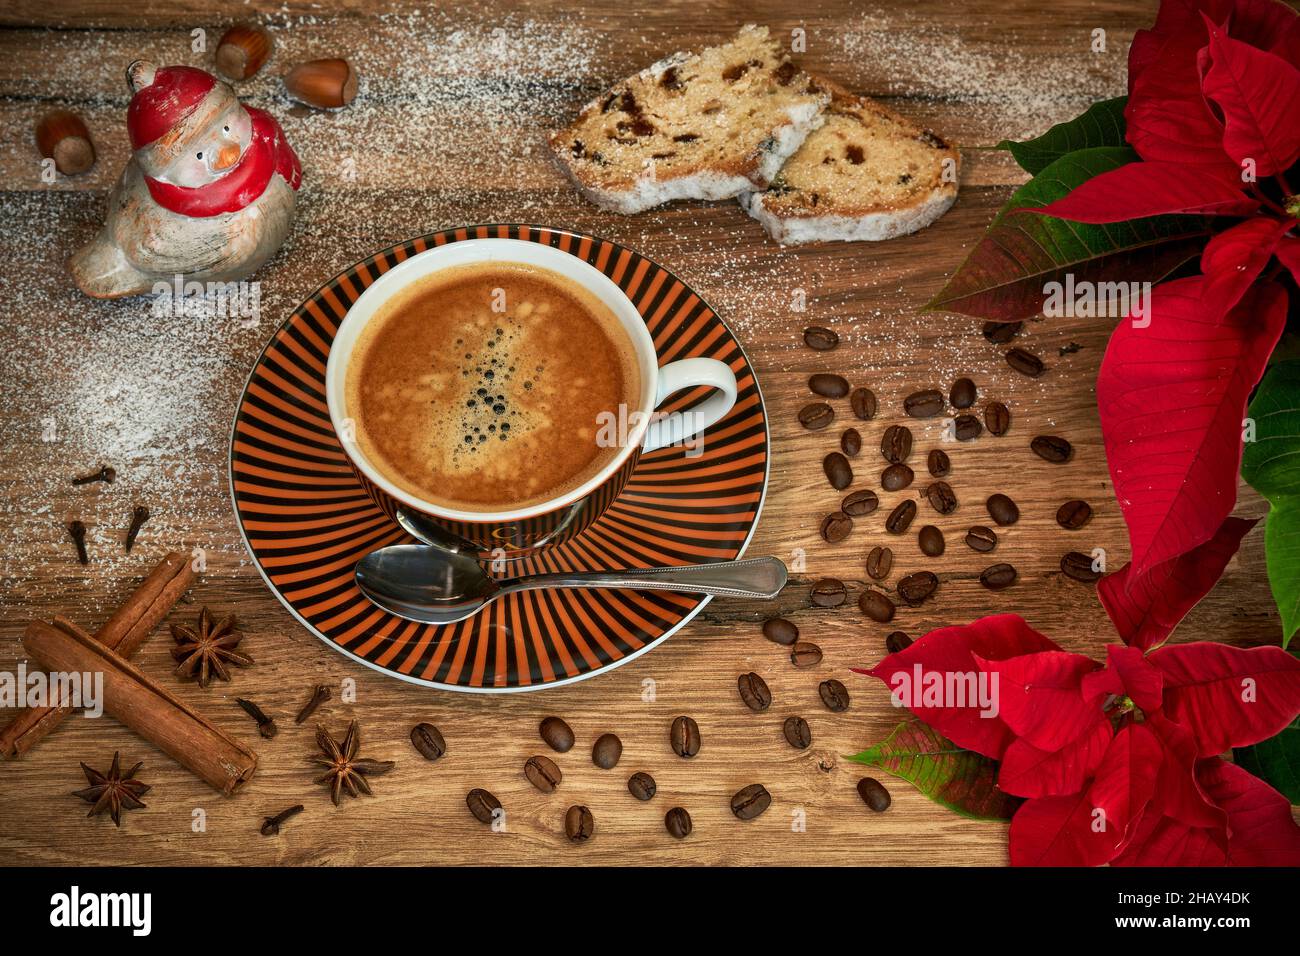 Weihnachtliches Kaffeemotiv mit Kaffeetasse, Weihnachtsstern, Stollen, Kaffeebohnen, Gewürzen, Haselnüssen und einer Vogelfigur auf einem Holztisch. Stock Photo